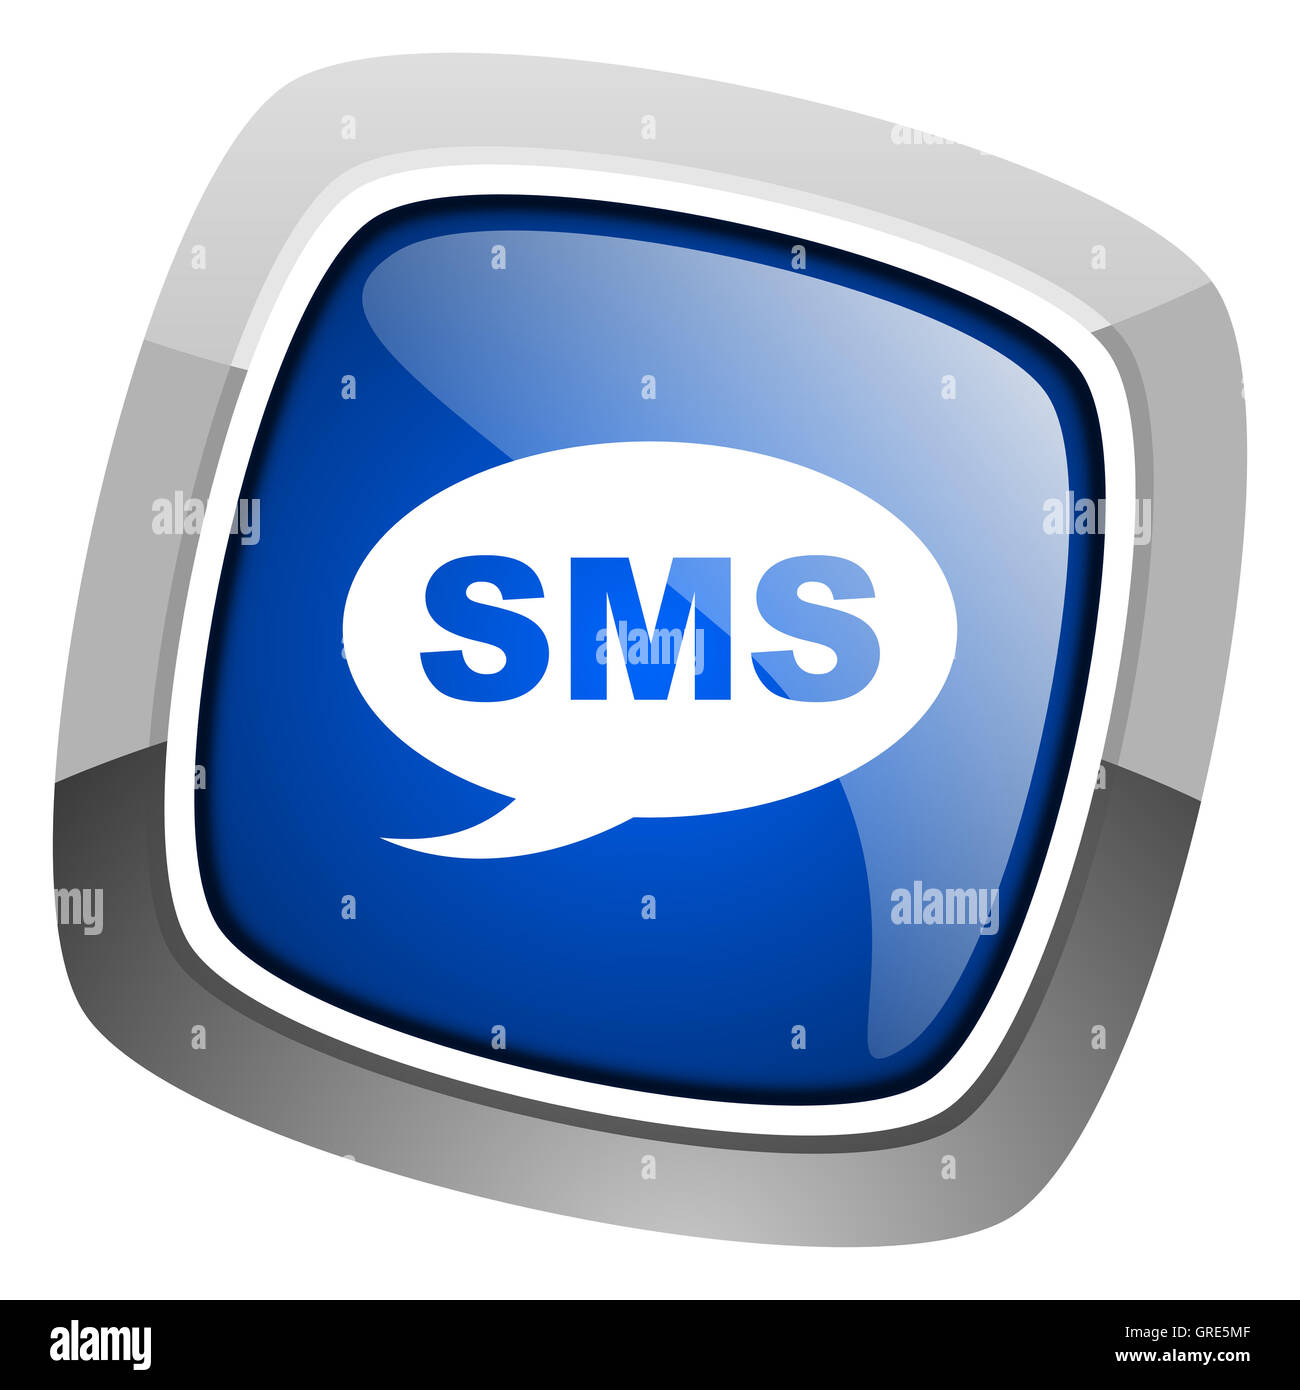 sms icon Stock Photo